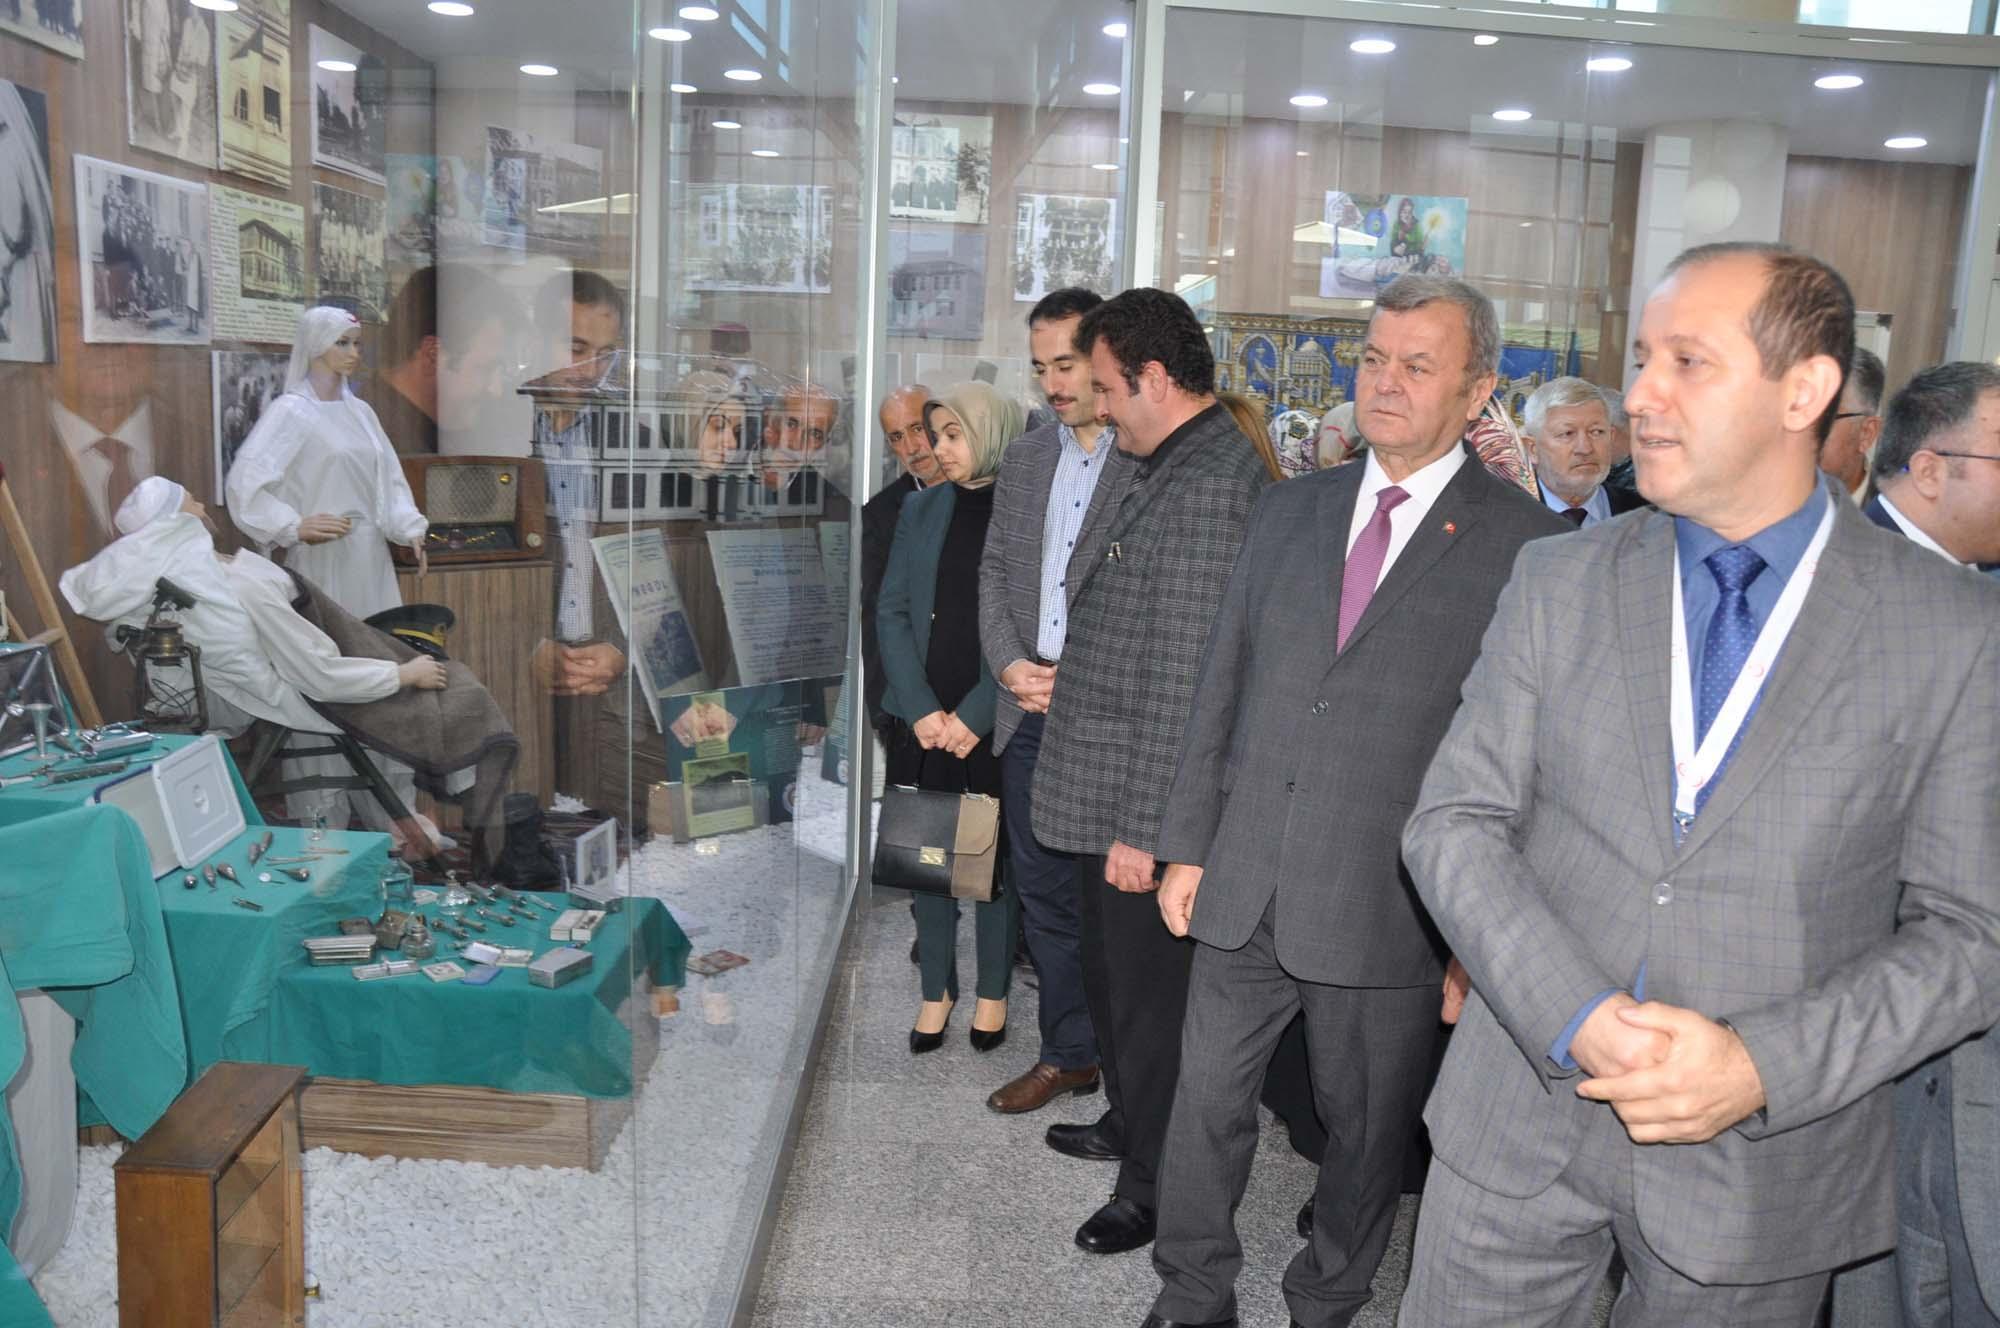 Türkiyede ilk, dünyada 2nci olan müze İnegöl Devlet Hastanesinde açıldı